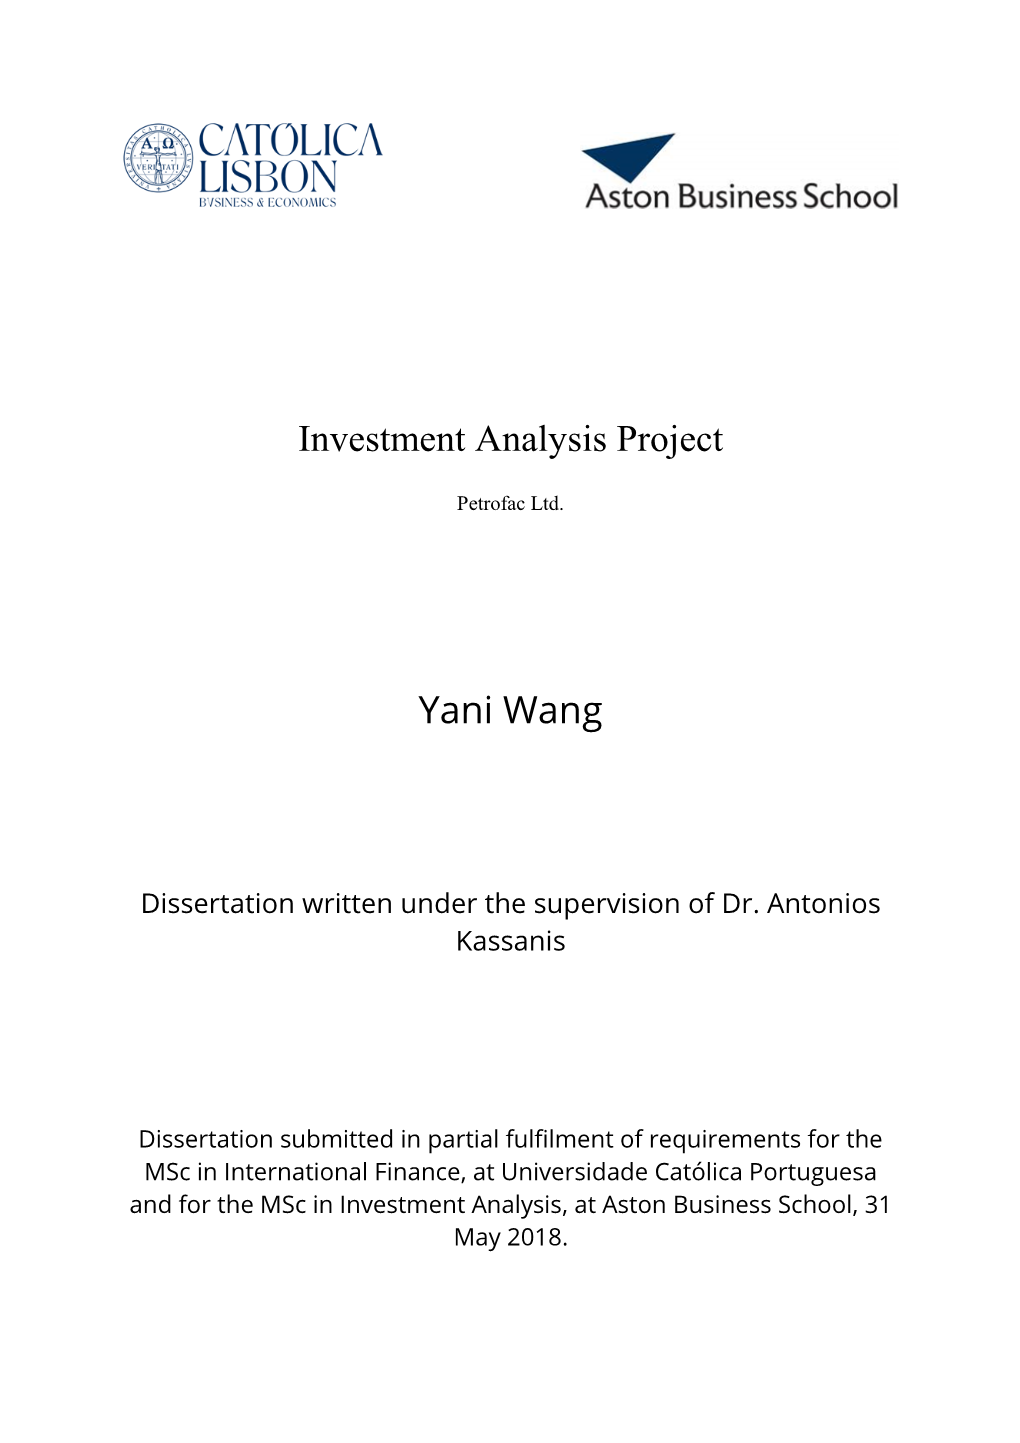 Investment Analysis Project Yani Wang